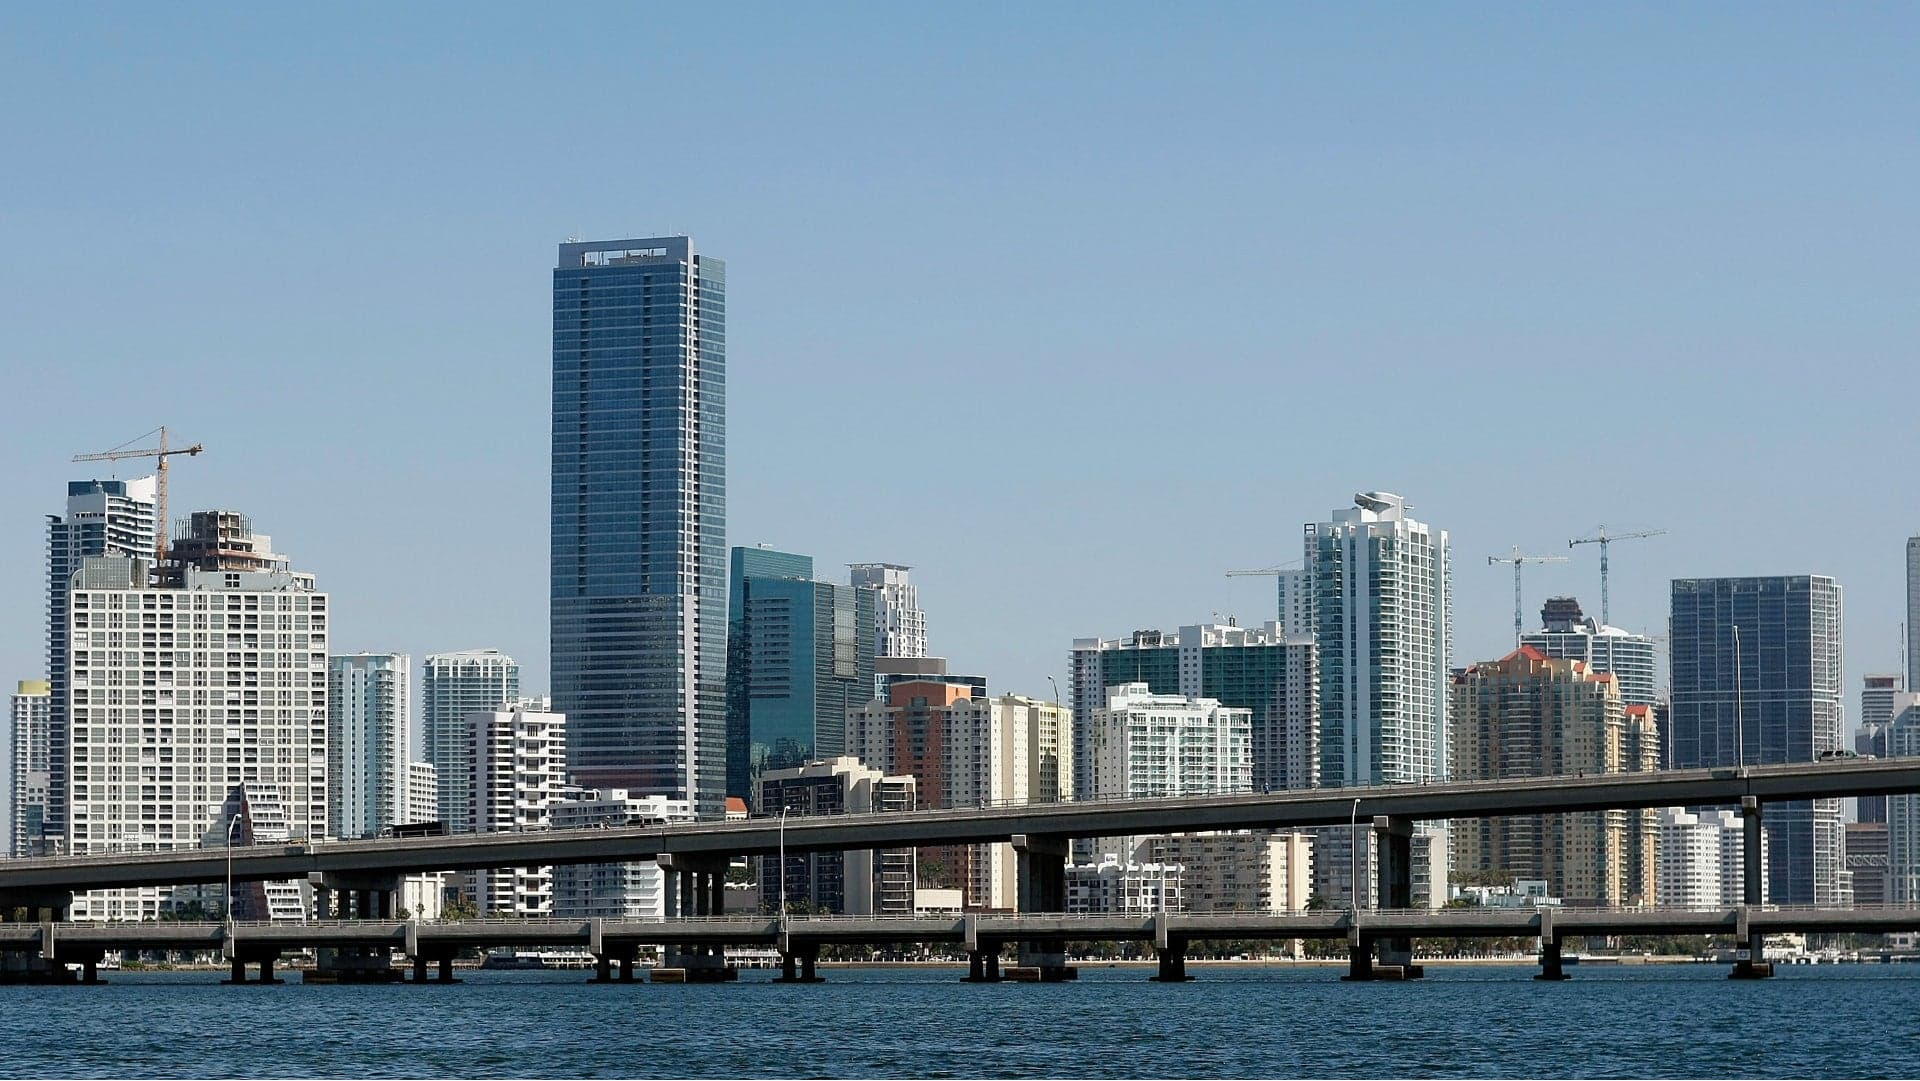 Rumor: Formula 1 to Trade Baku for Miami on 2019 Calendar